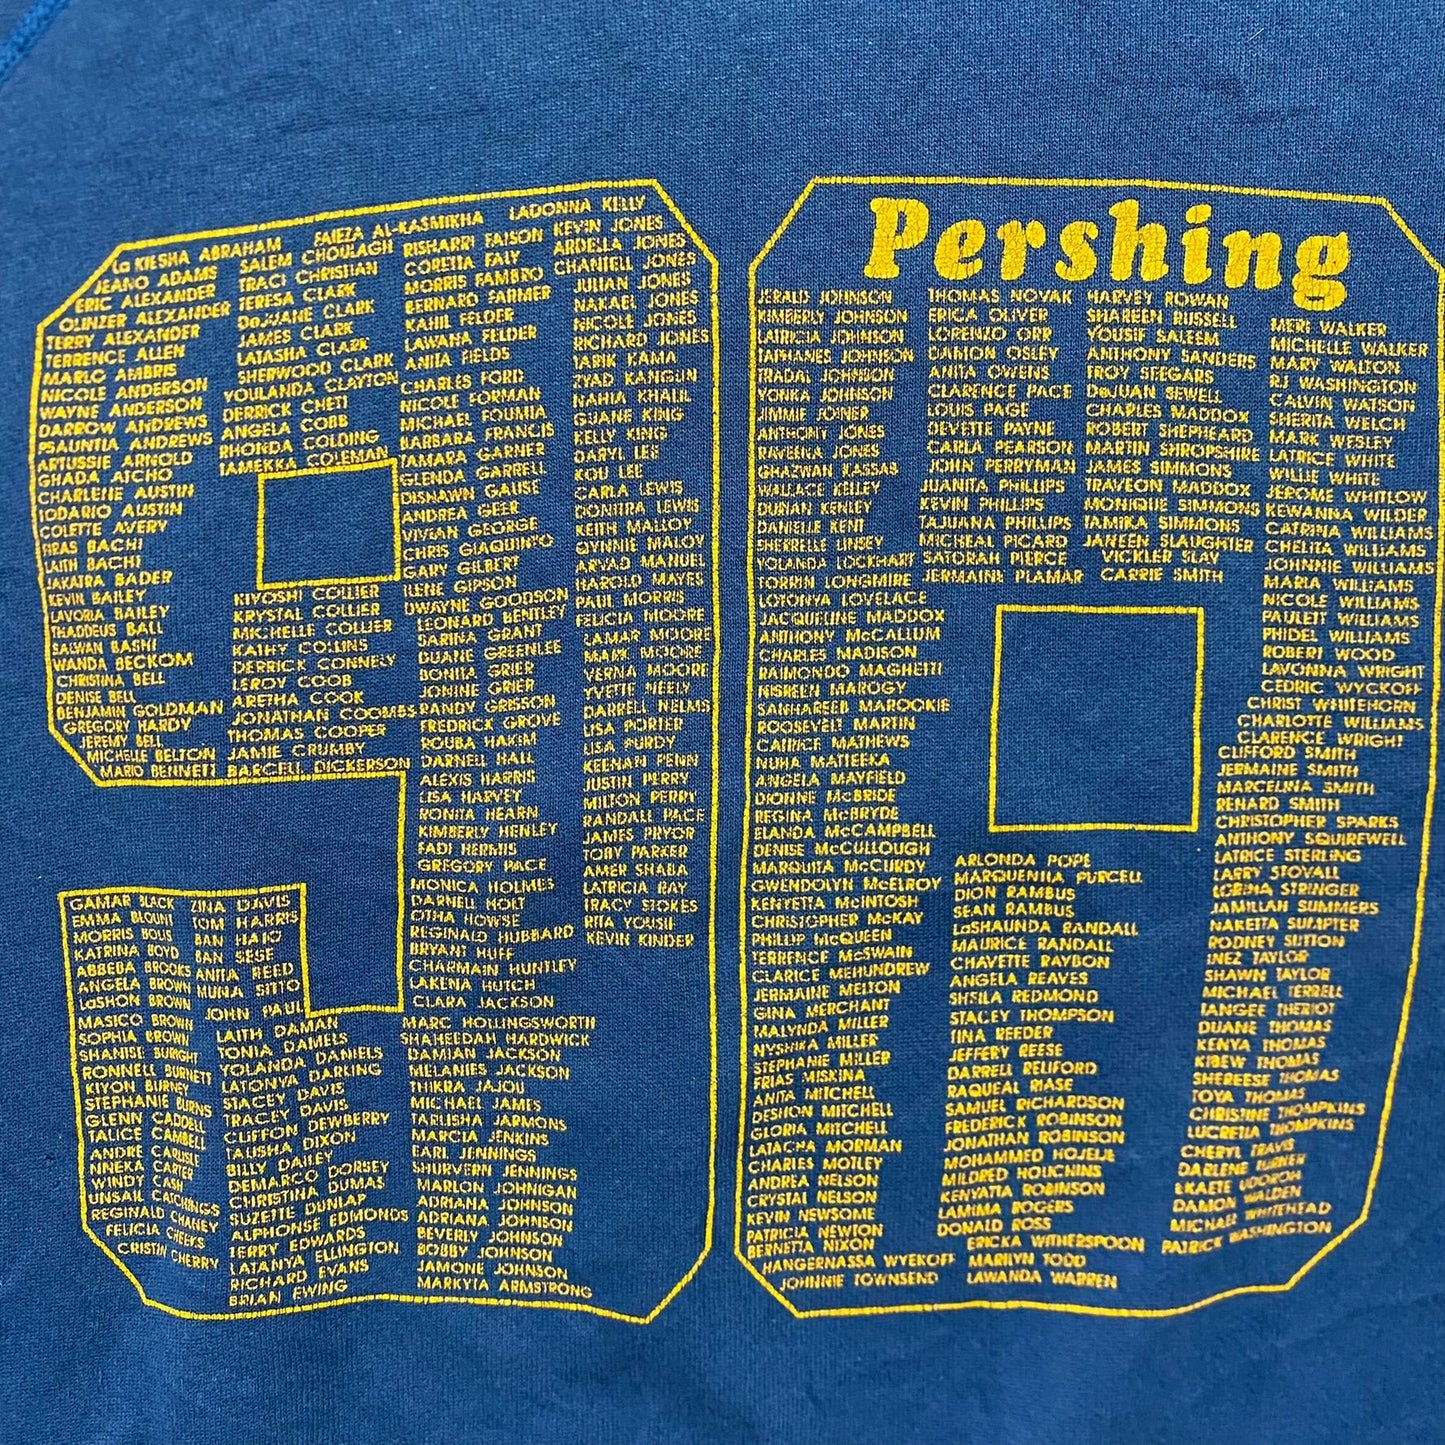 Vintage 90s Pershing School Essential Crewneck Sweatshirt